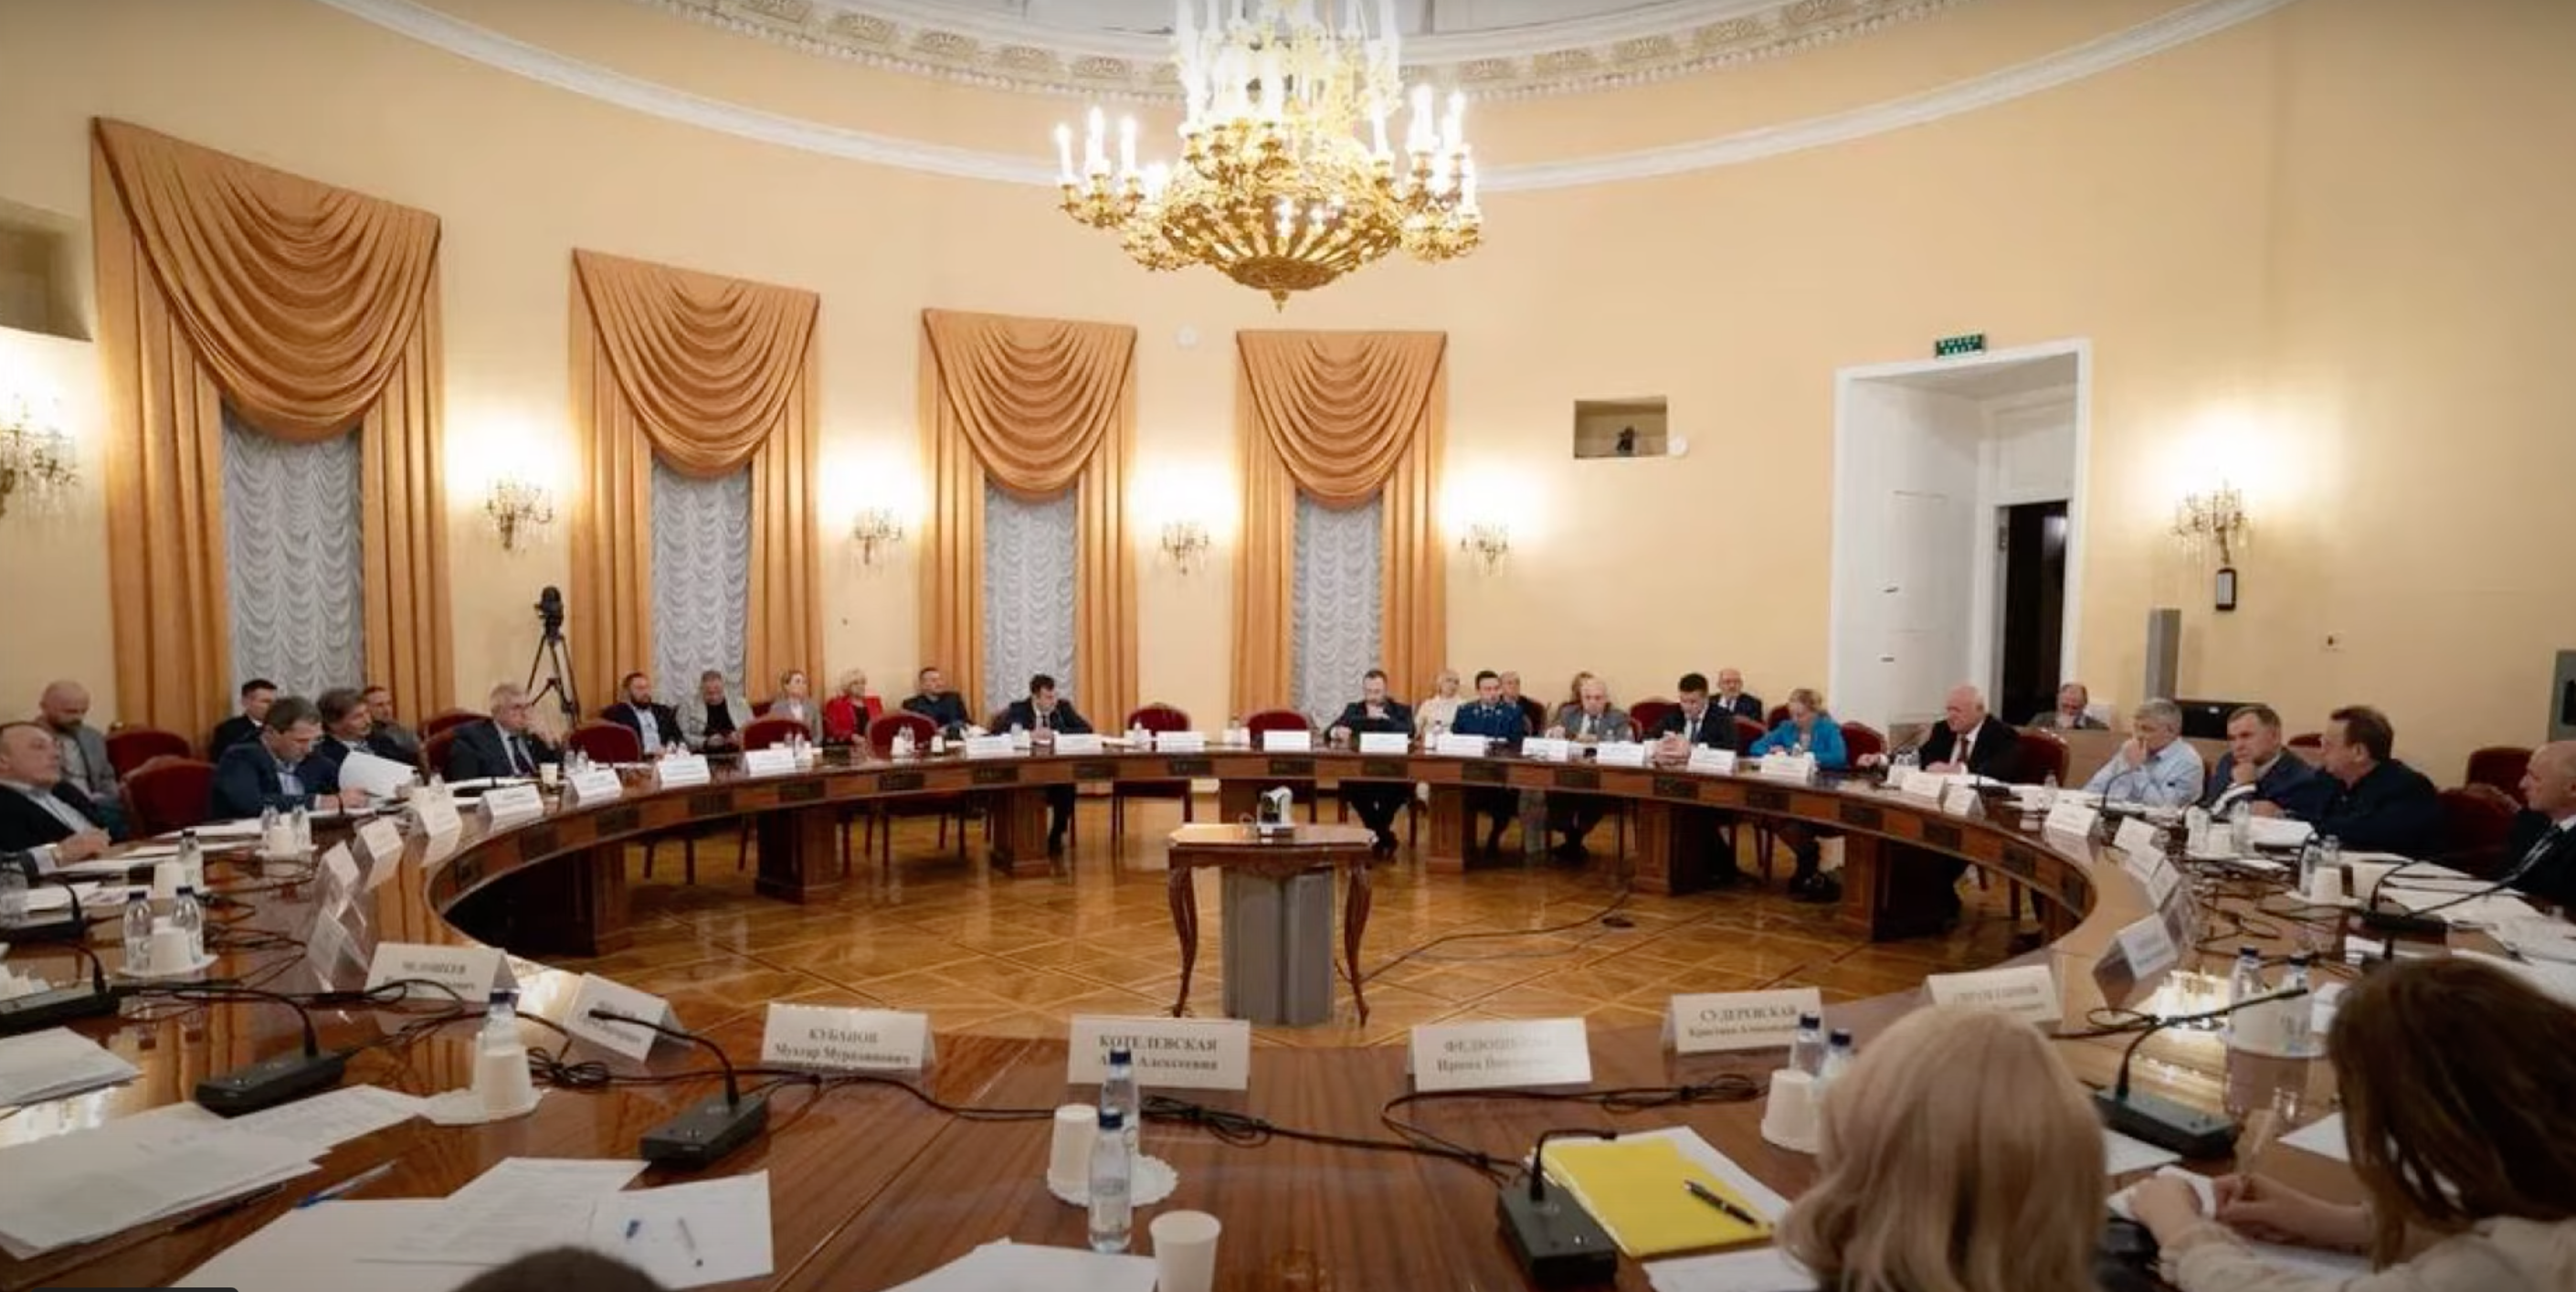 Круглый стол в Госдуме. Скриншот с видео